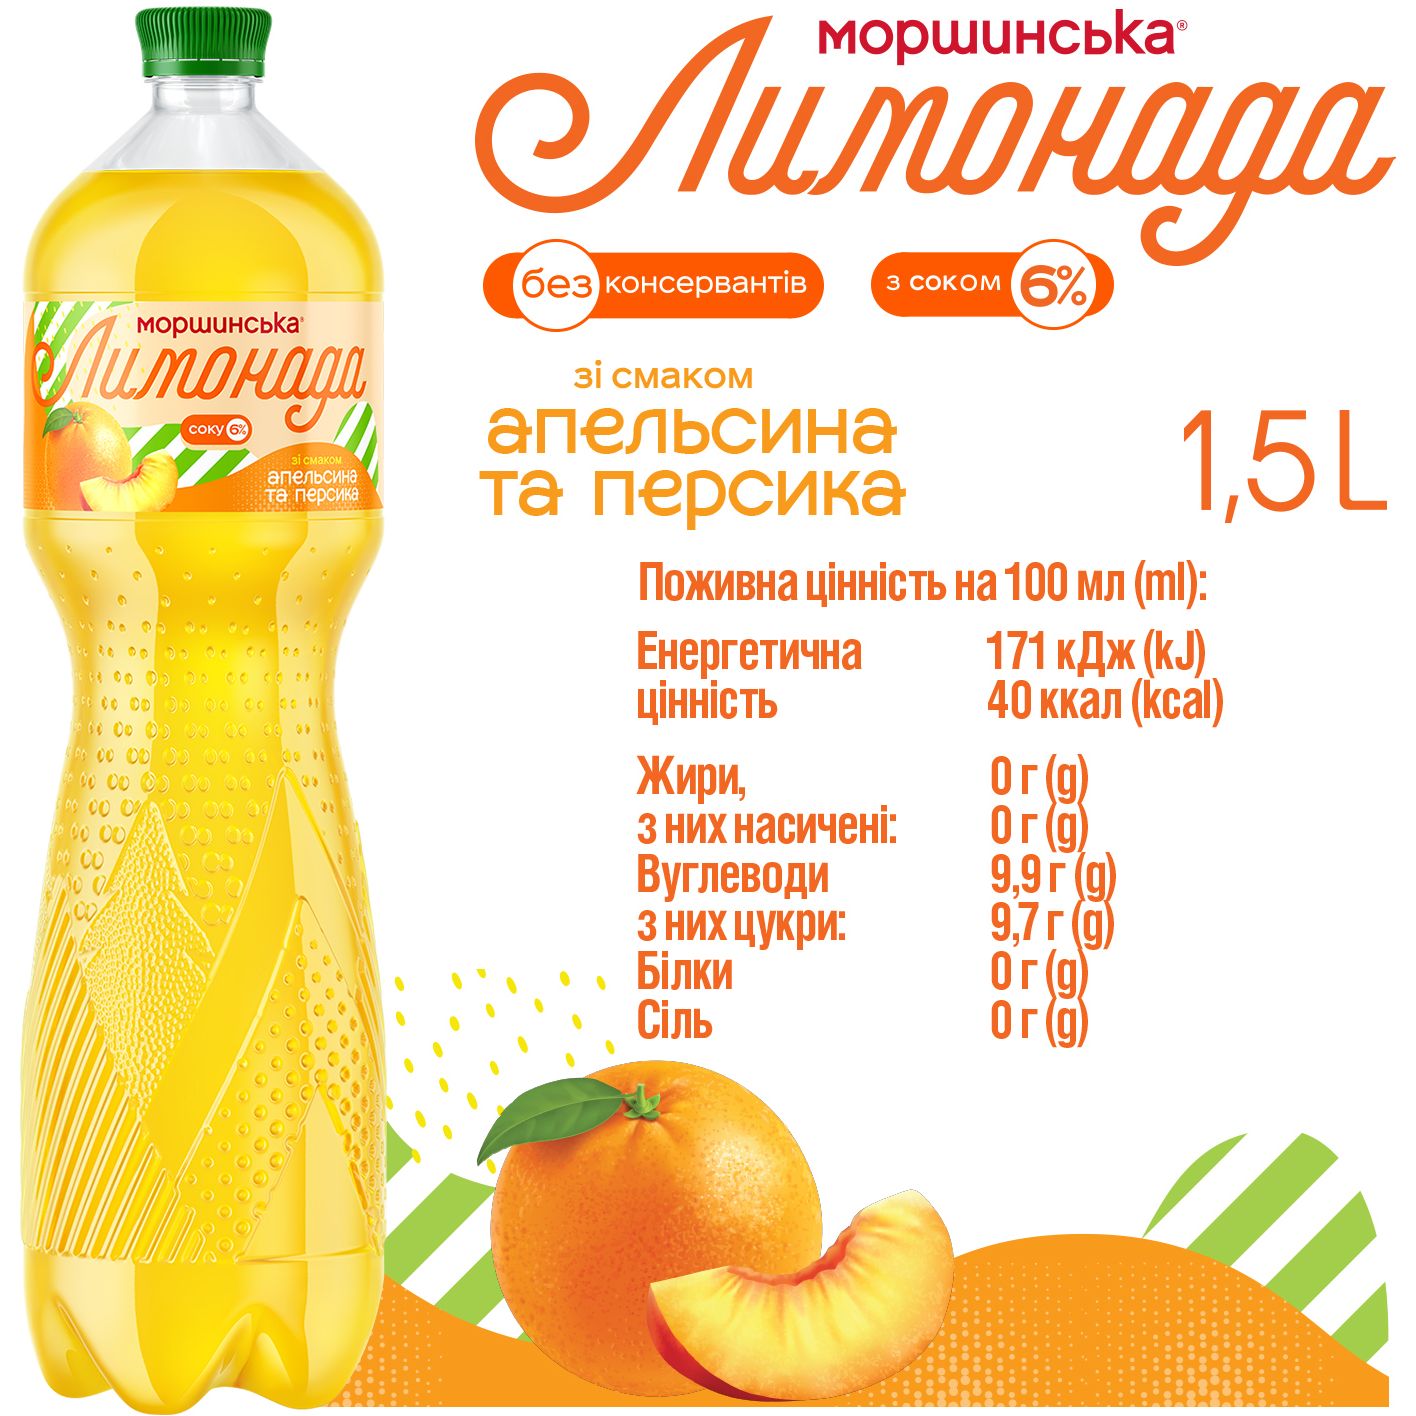 Напиток Моршинская Лимонада Апельсин-Персик среднегазированный 1.5 л - фото 4